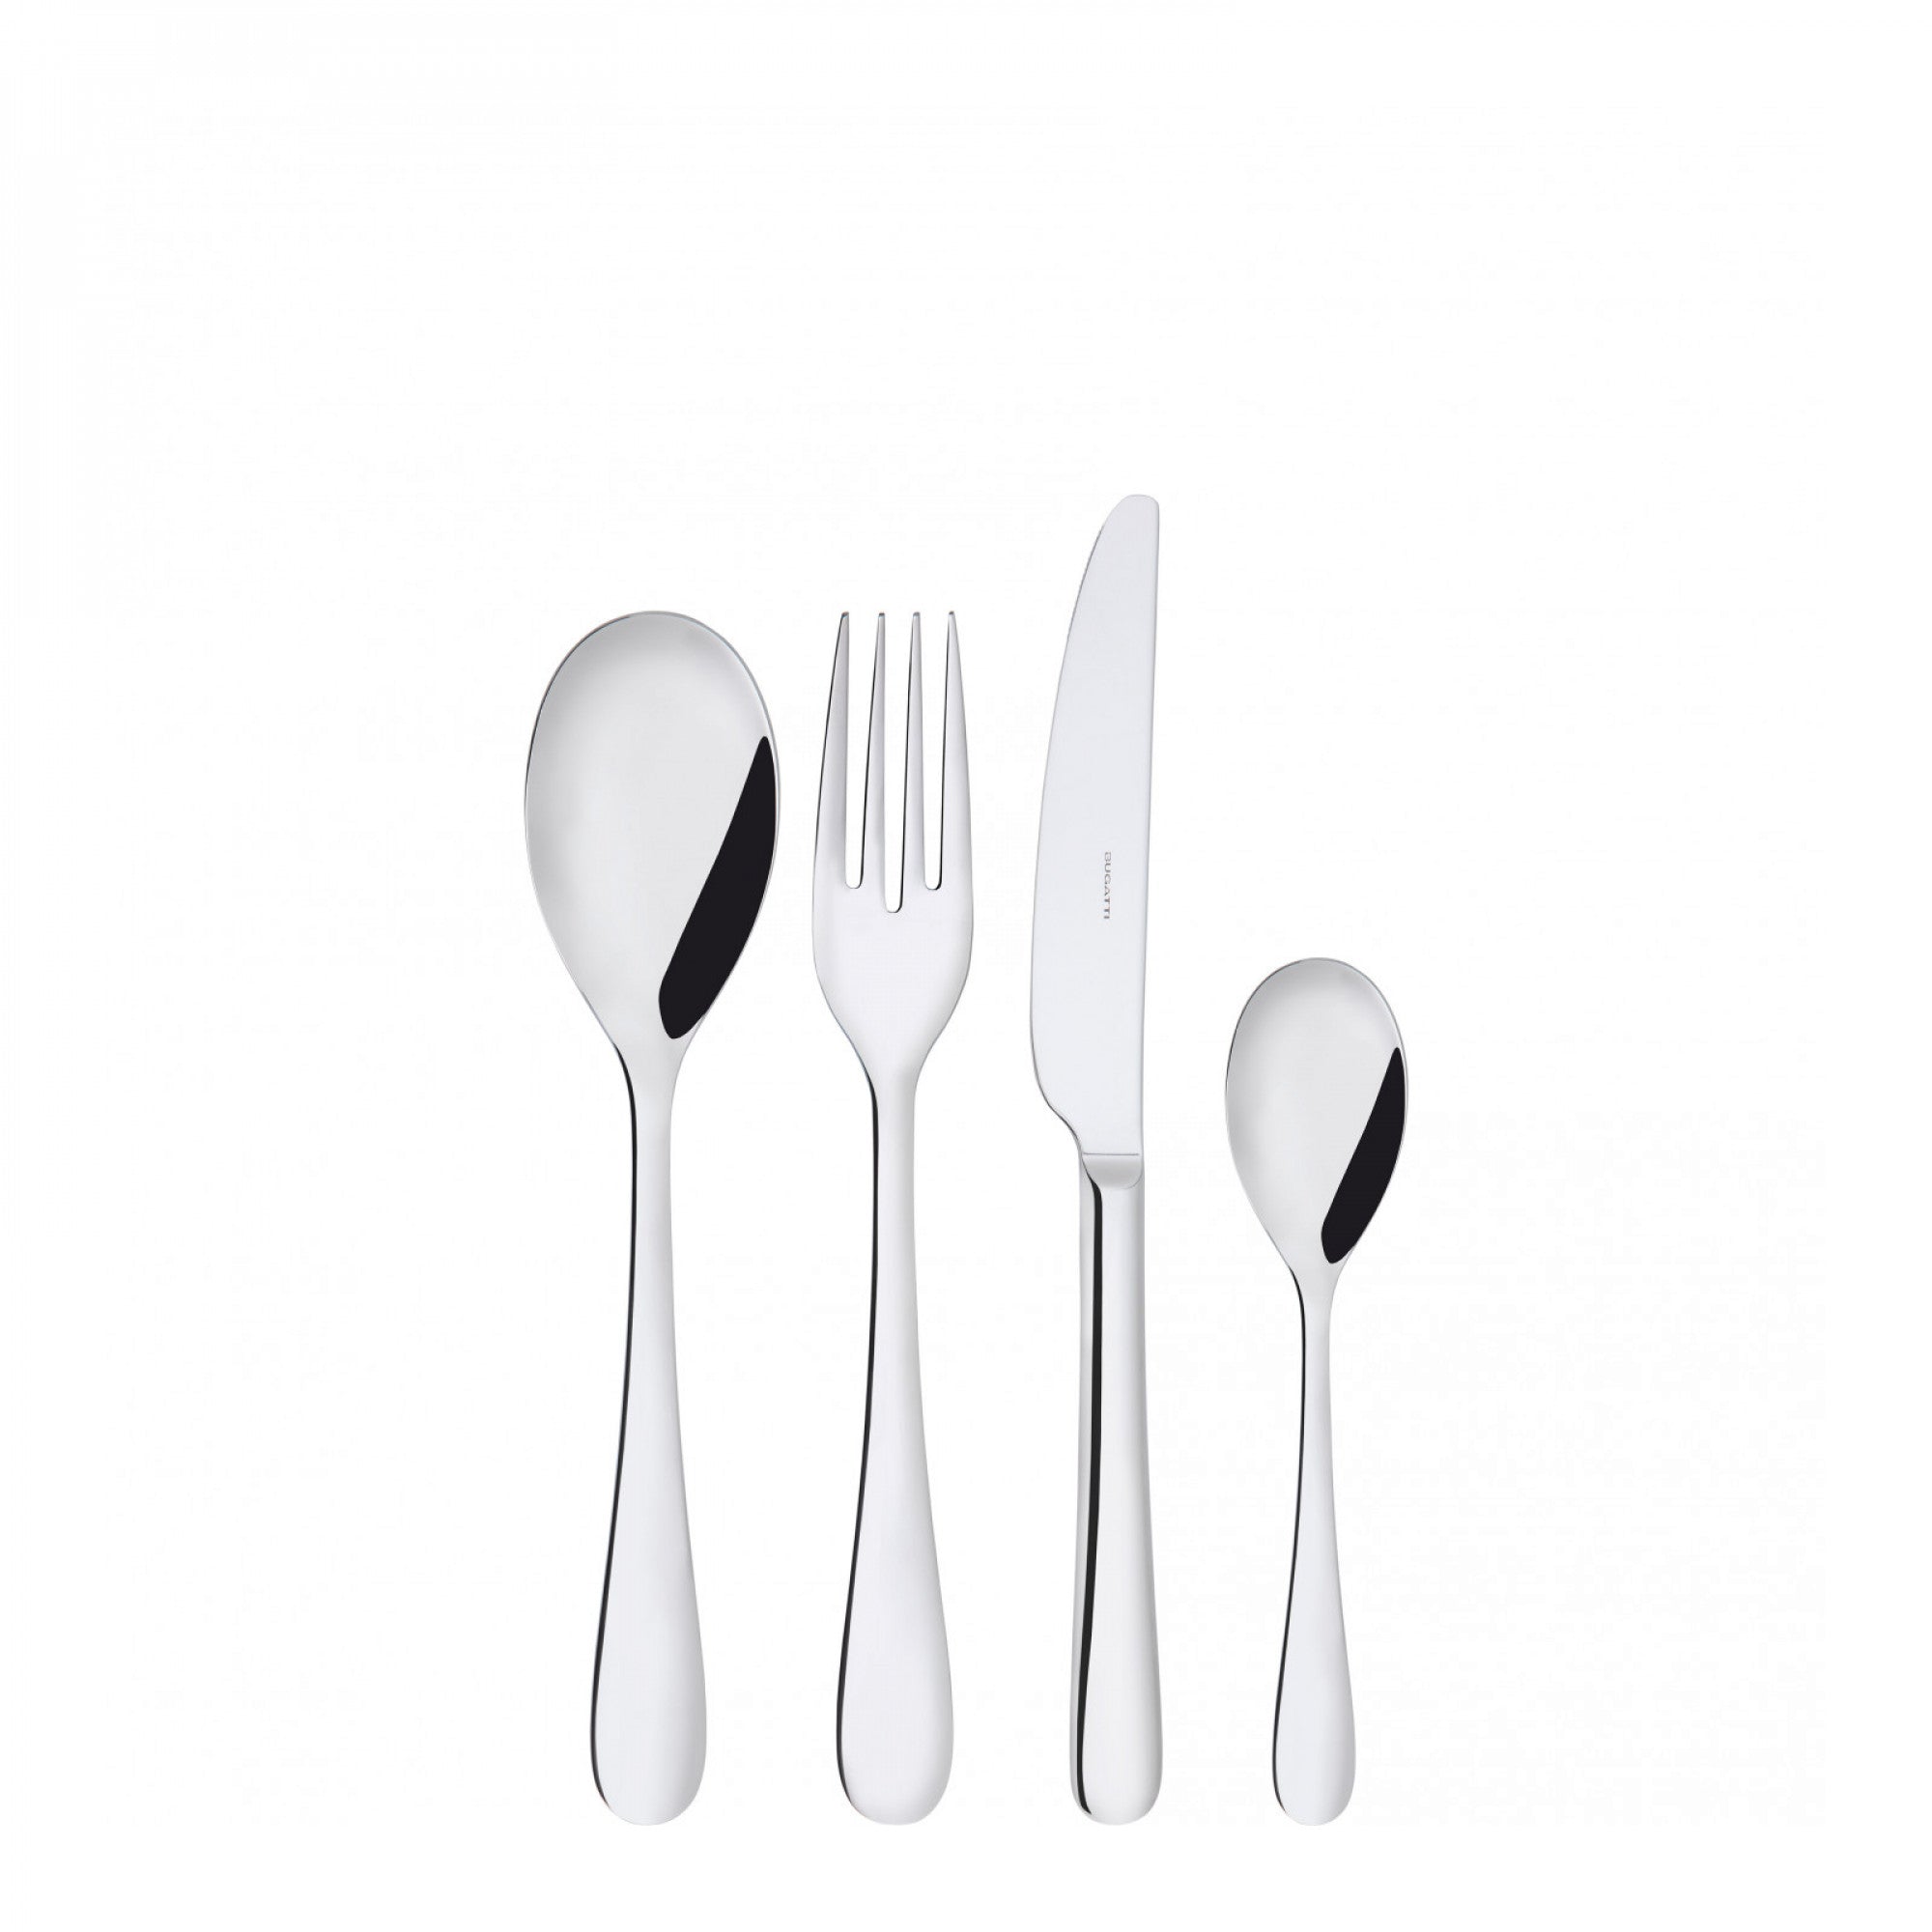 BUGATTI, Siena, 24-piece cutlery set in 18/10 stainless steel